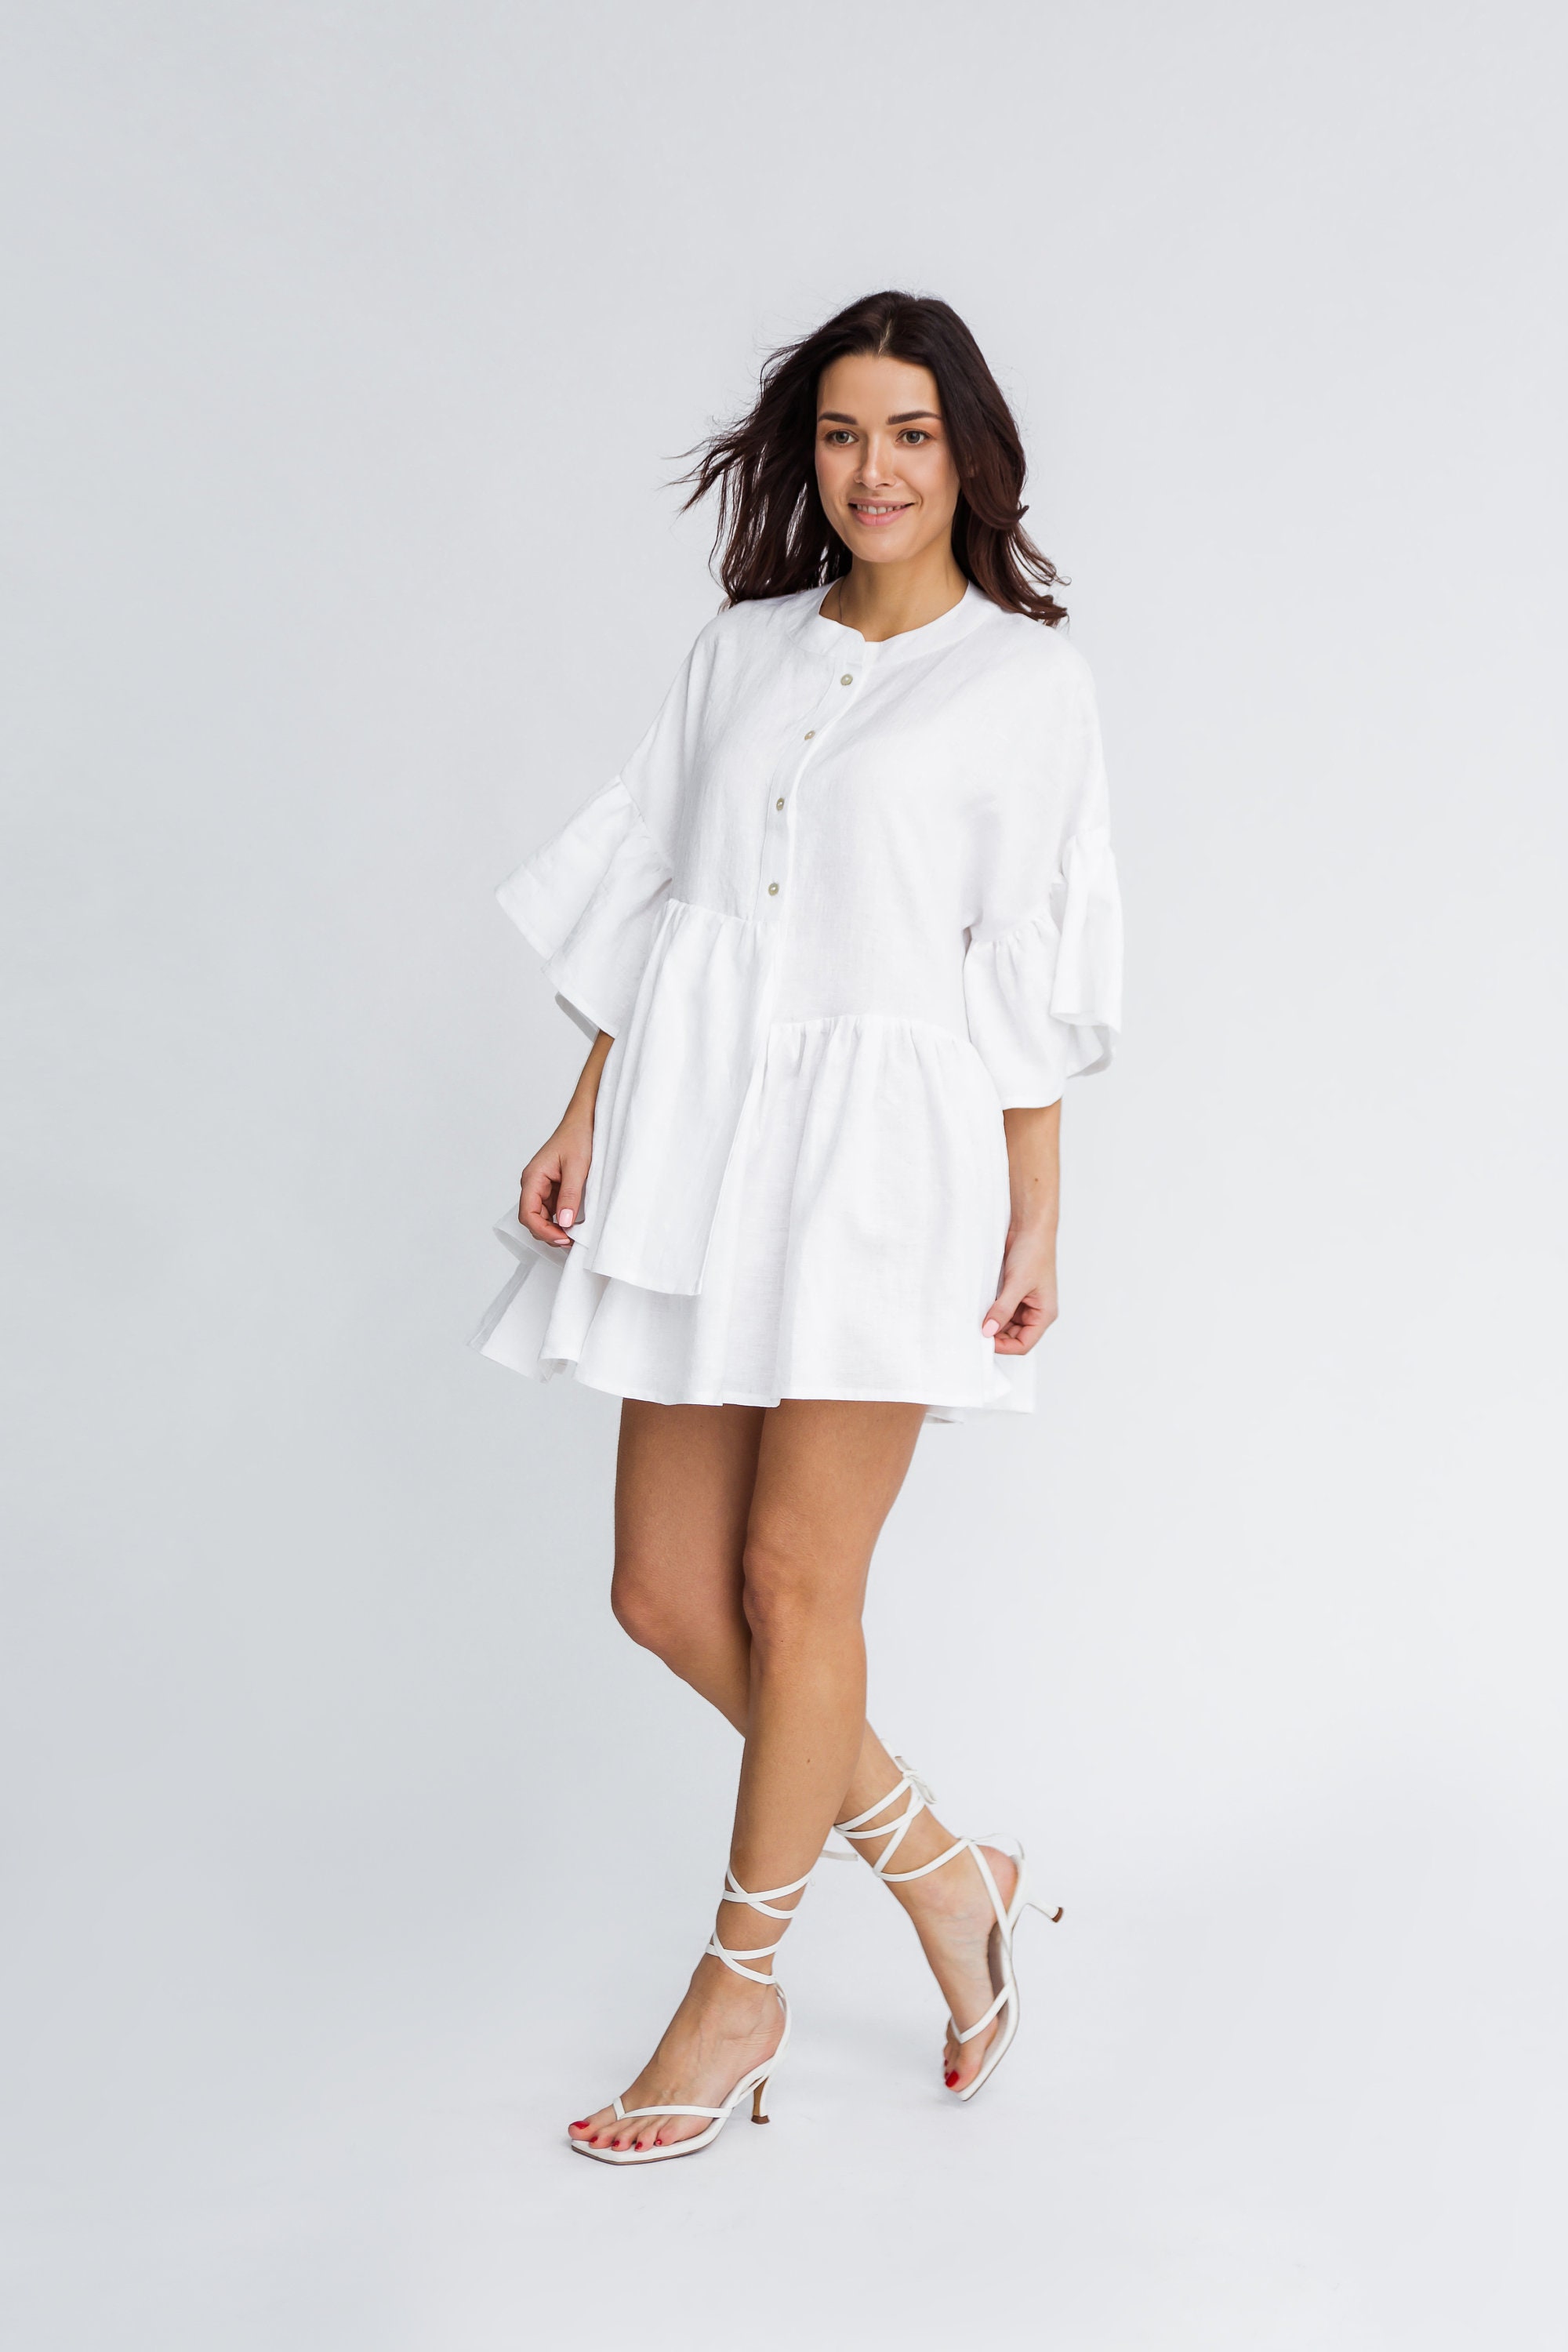 SOPHIE Linen Dress in White / White Linen Shirtdress - Etsy